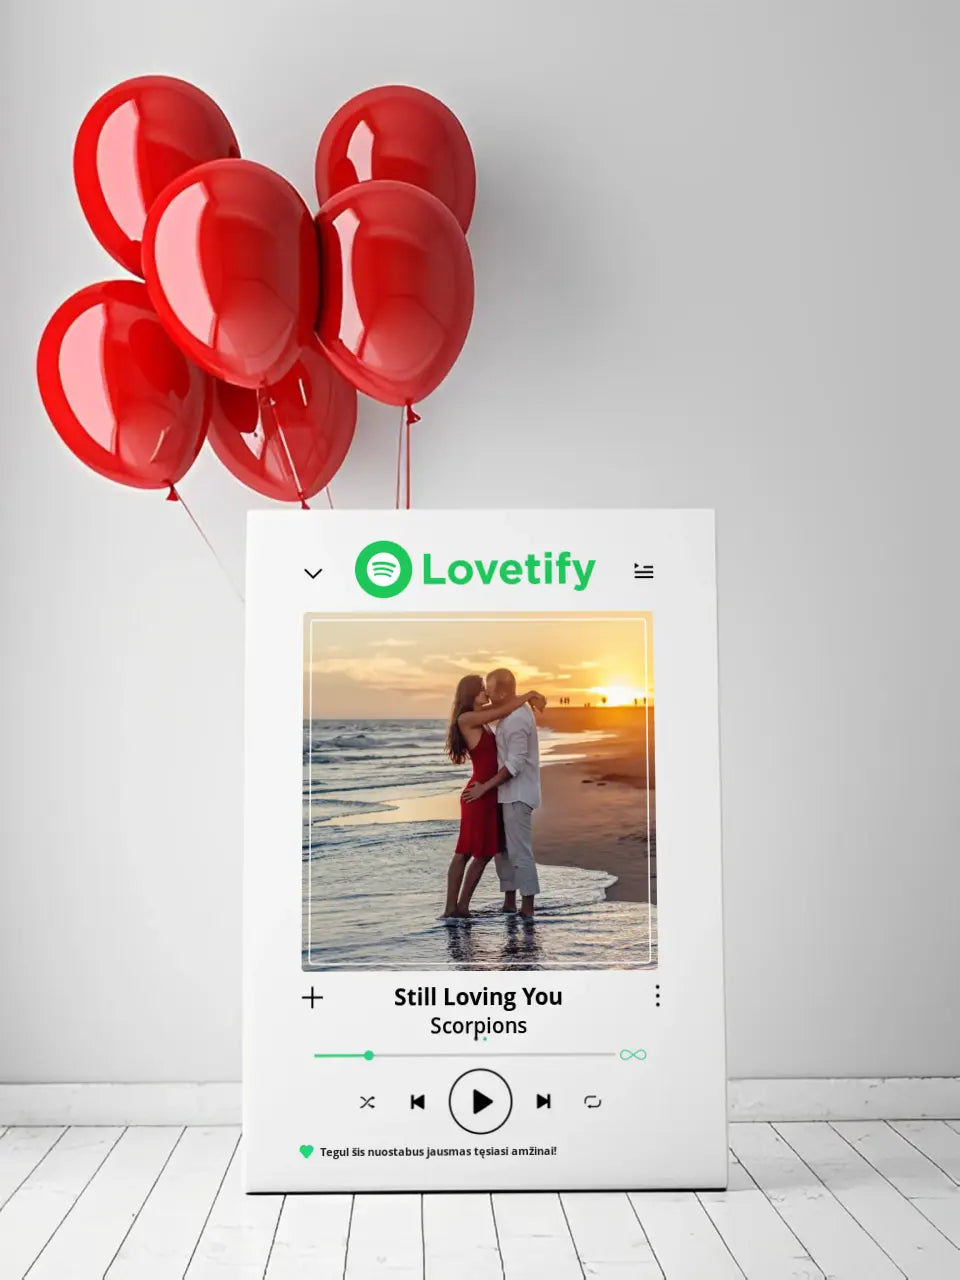 Personalizuotas "lovetify" drobės dizainas su tavo nuotrauka ir pasirinkta daina